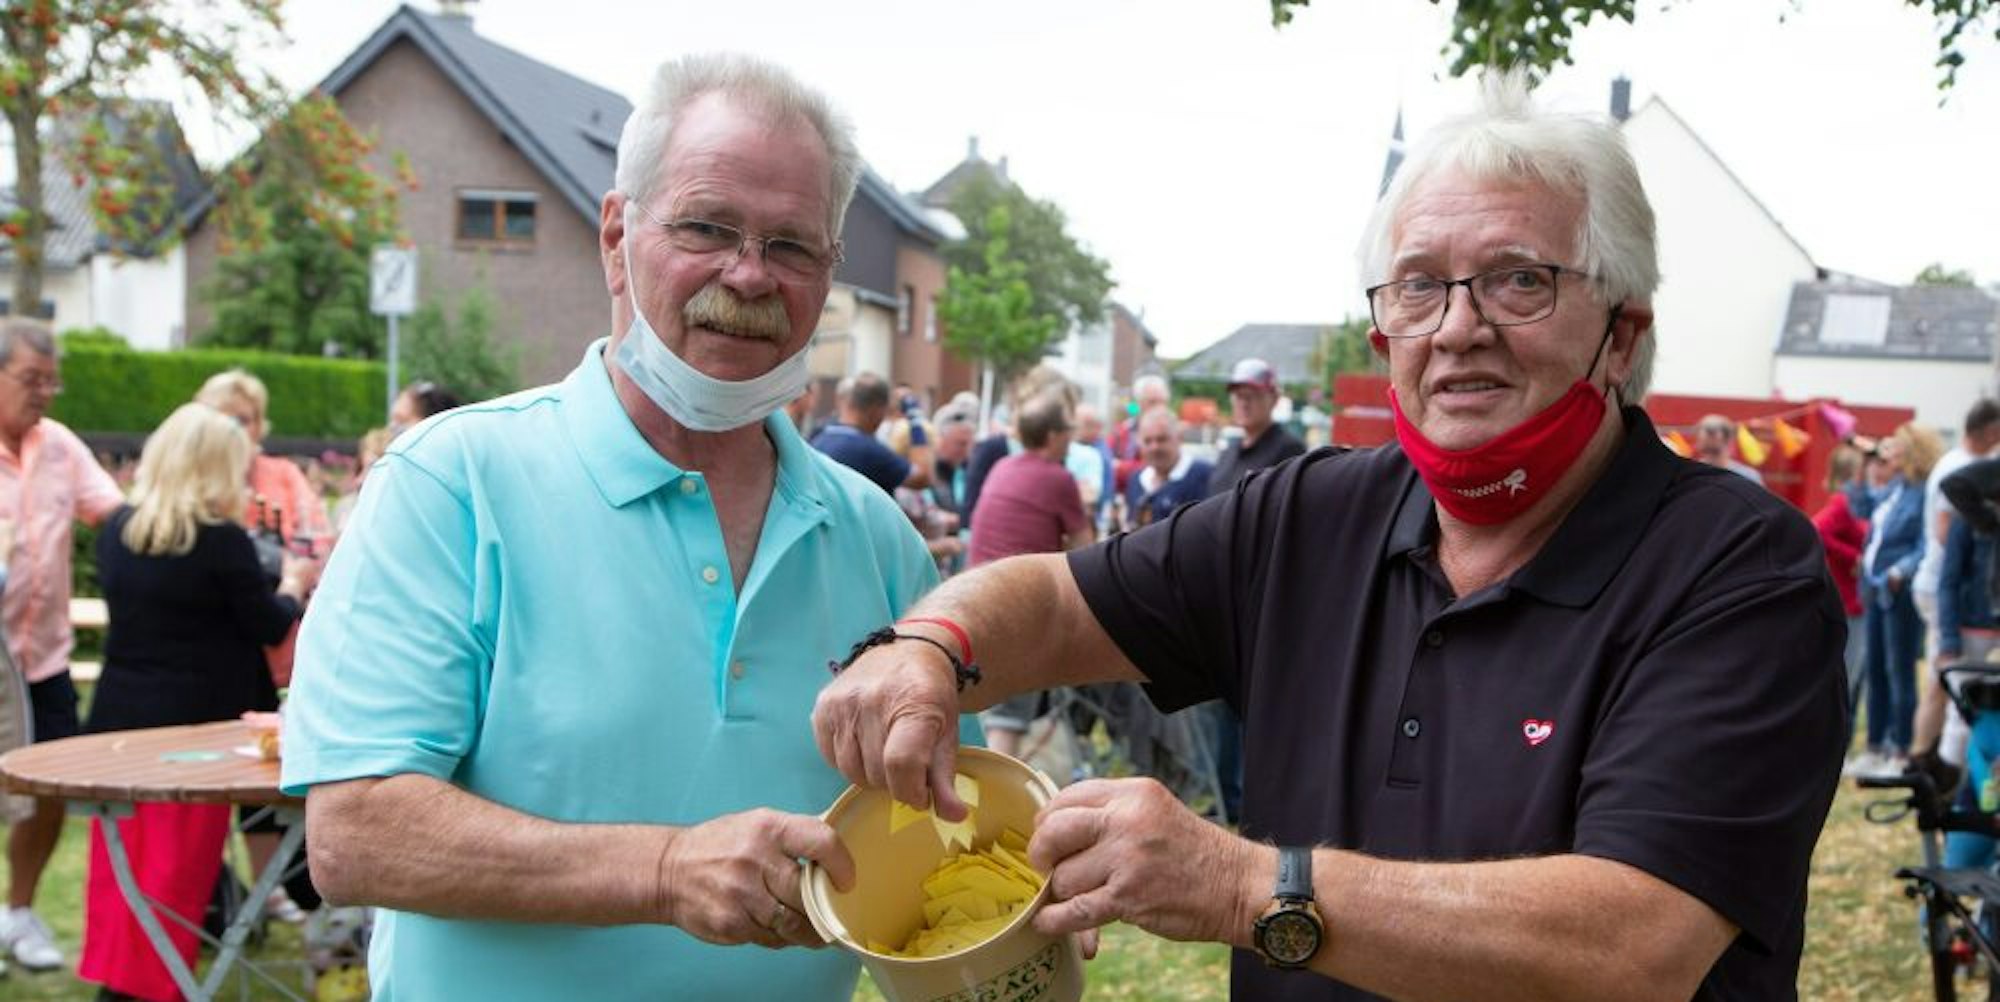 Für den Hauptpreis, ein Mofa, verkauften Klaus Niggemann (l.) und Günther Hayenga auf dem Fest 300 Lose.